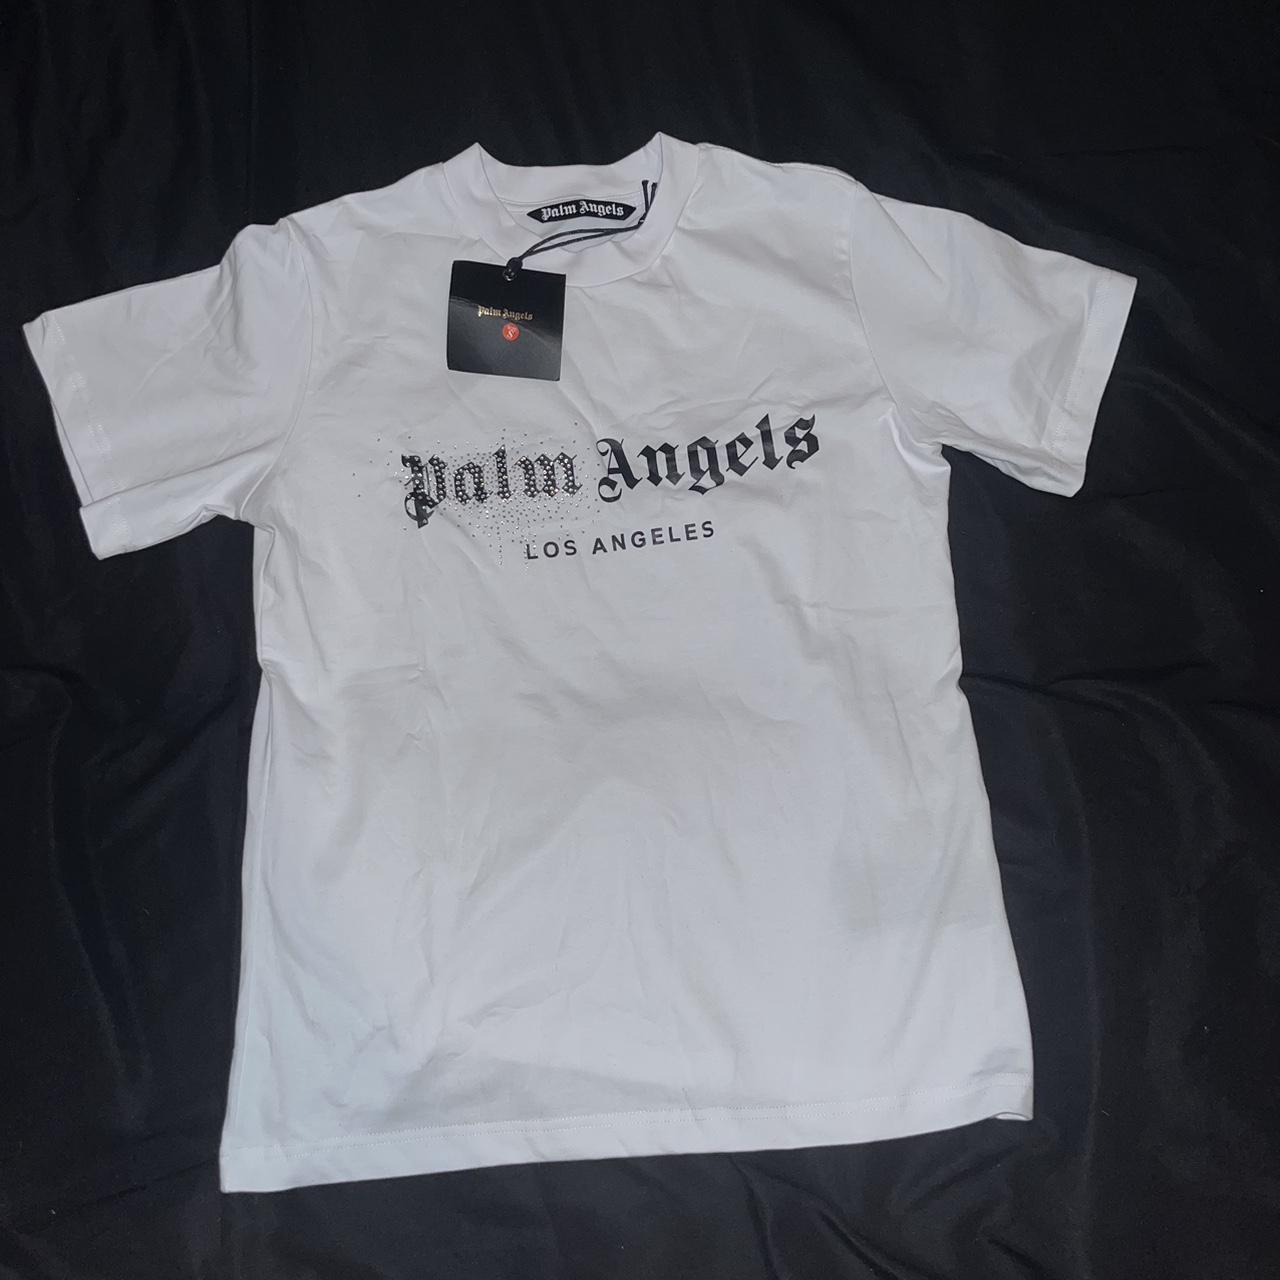 Palm angels T-shirt Colour - White Size -... - Depop